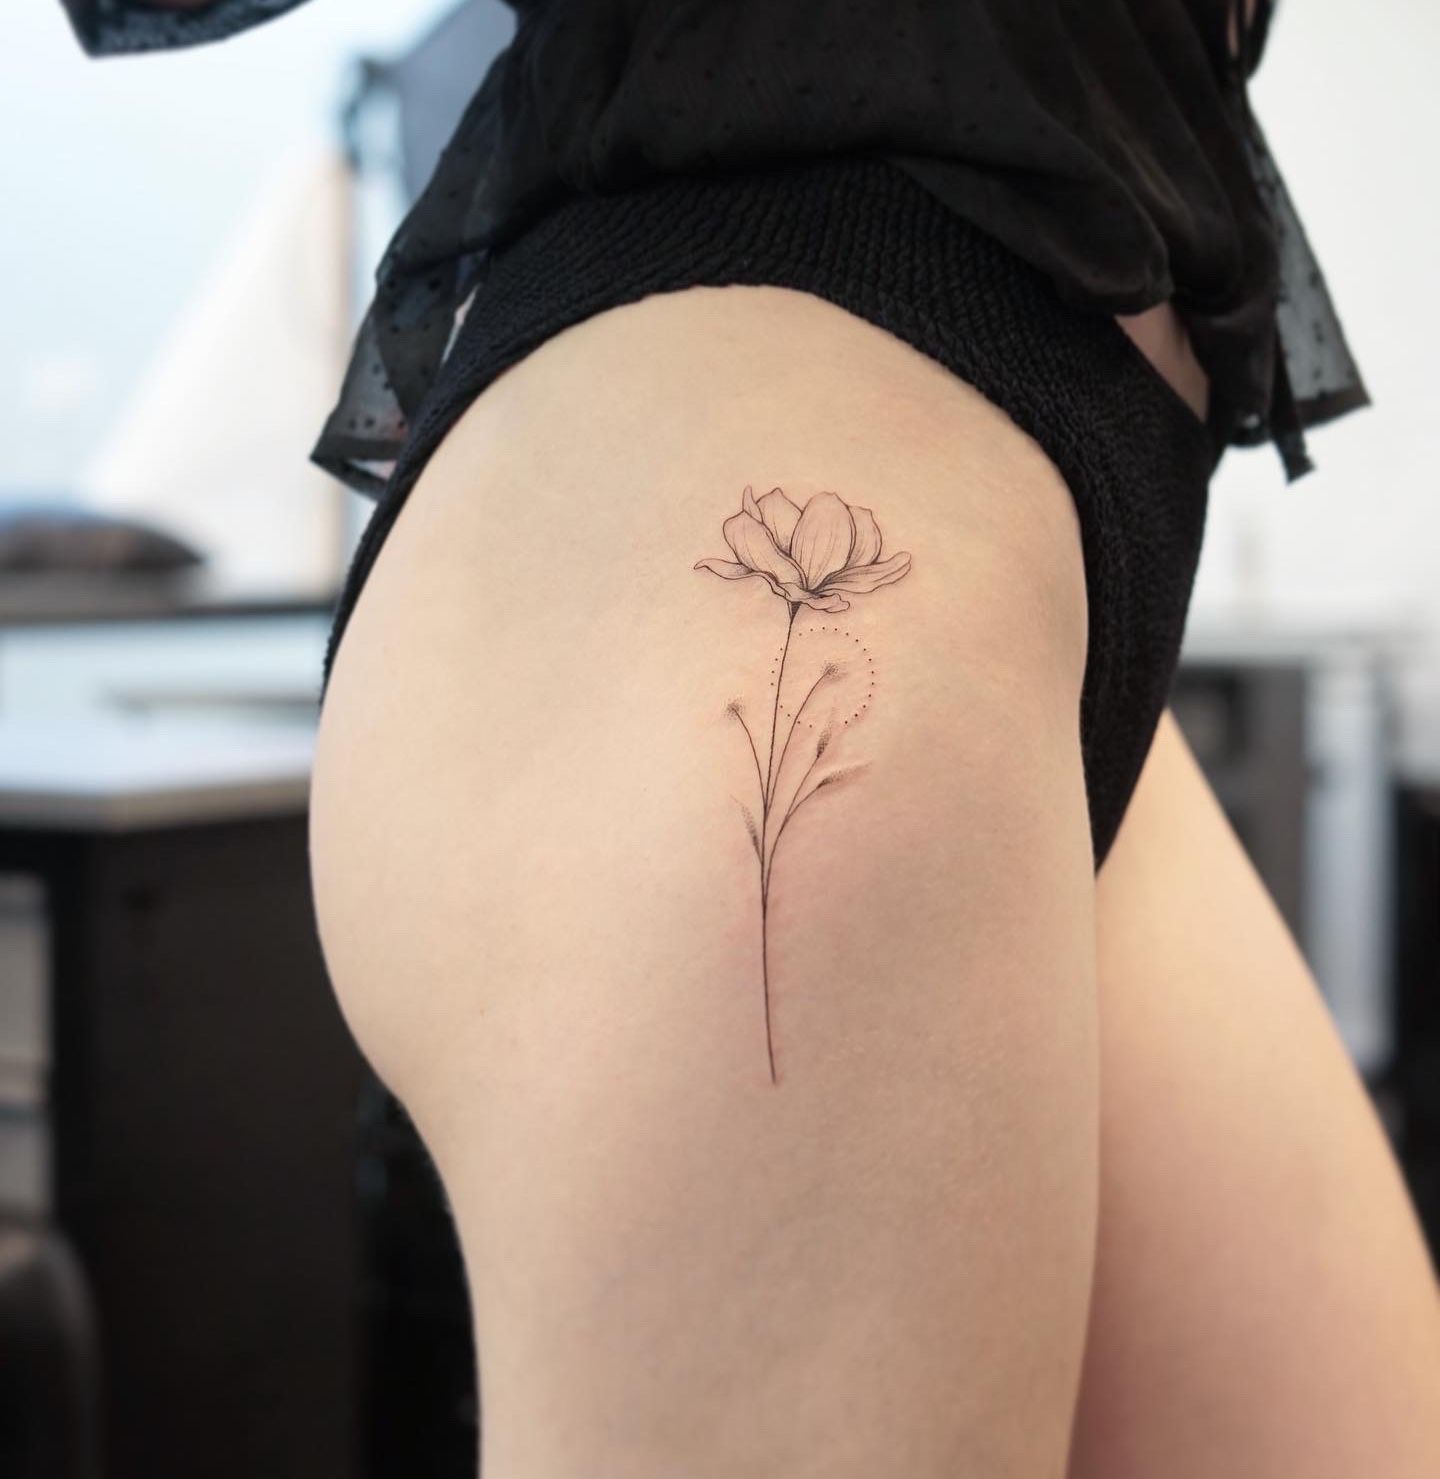 Wild poppy tattoo by Laila Yanez  Post 29689